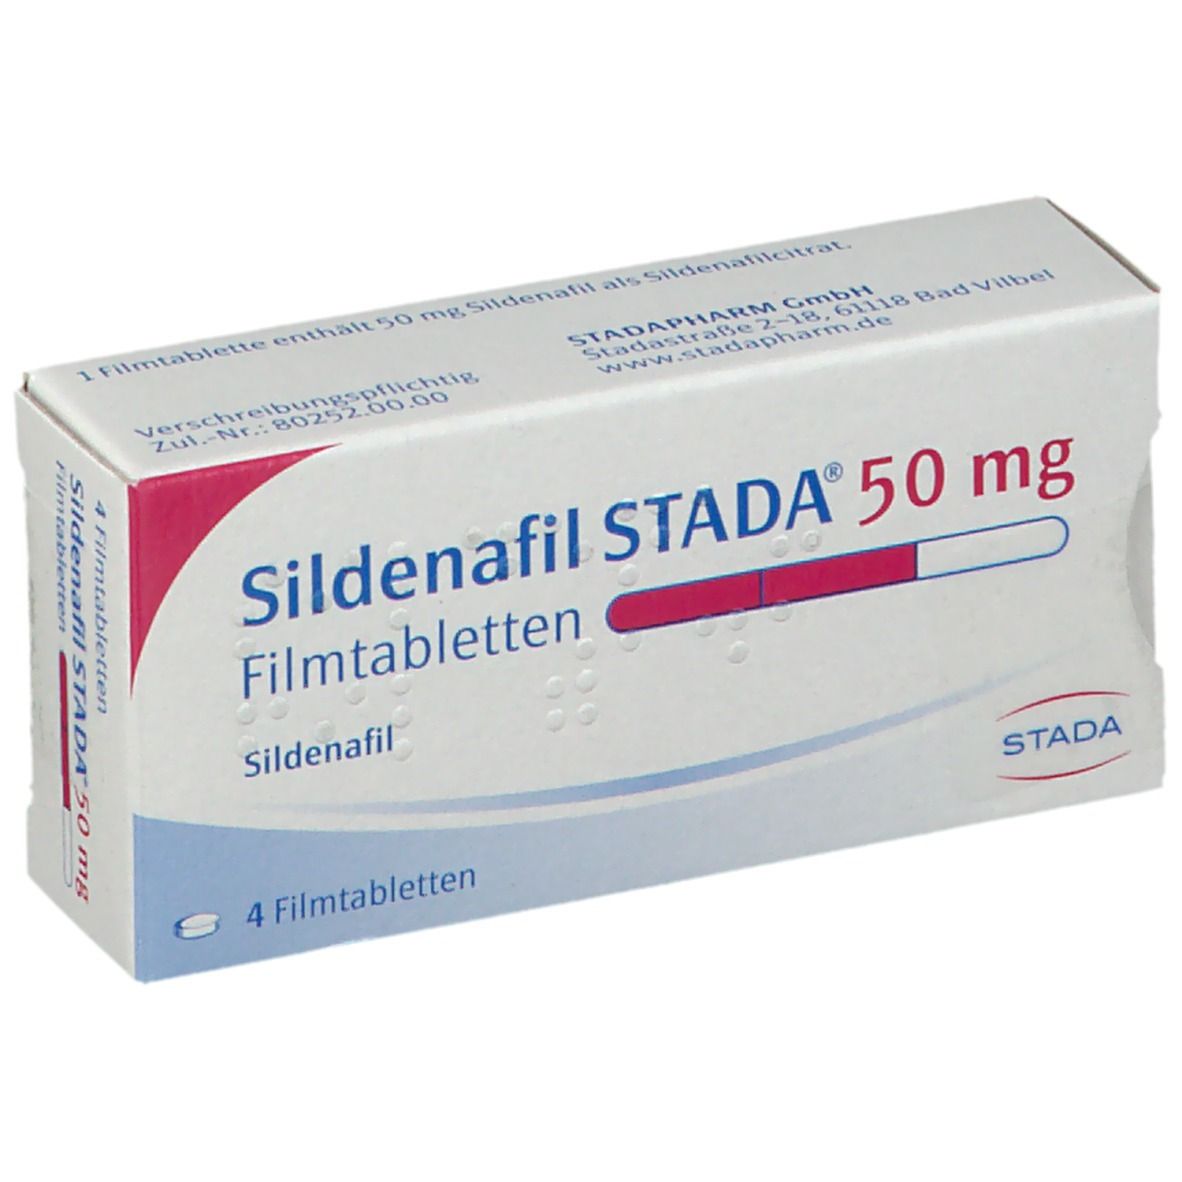 Sildenafil STADA® 50 mg